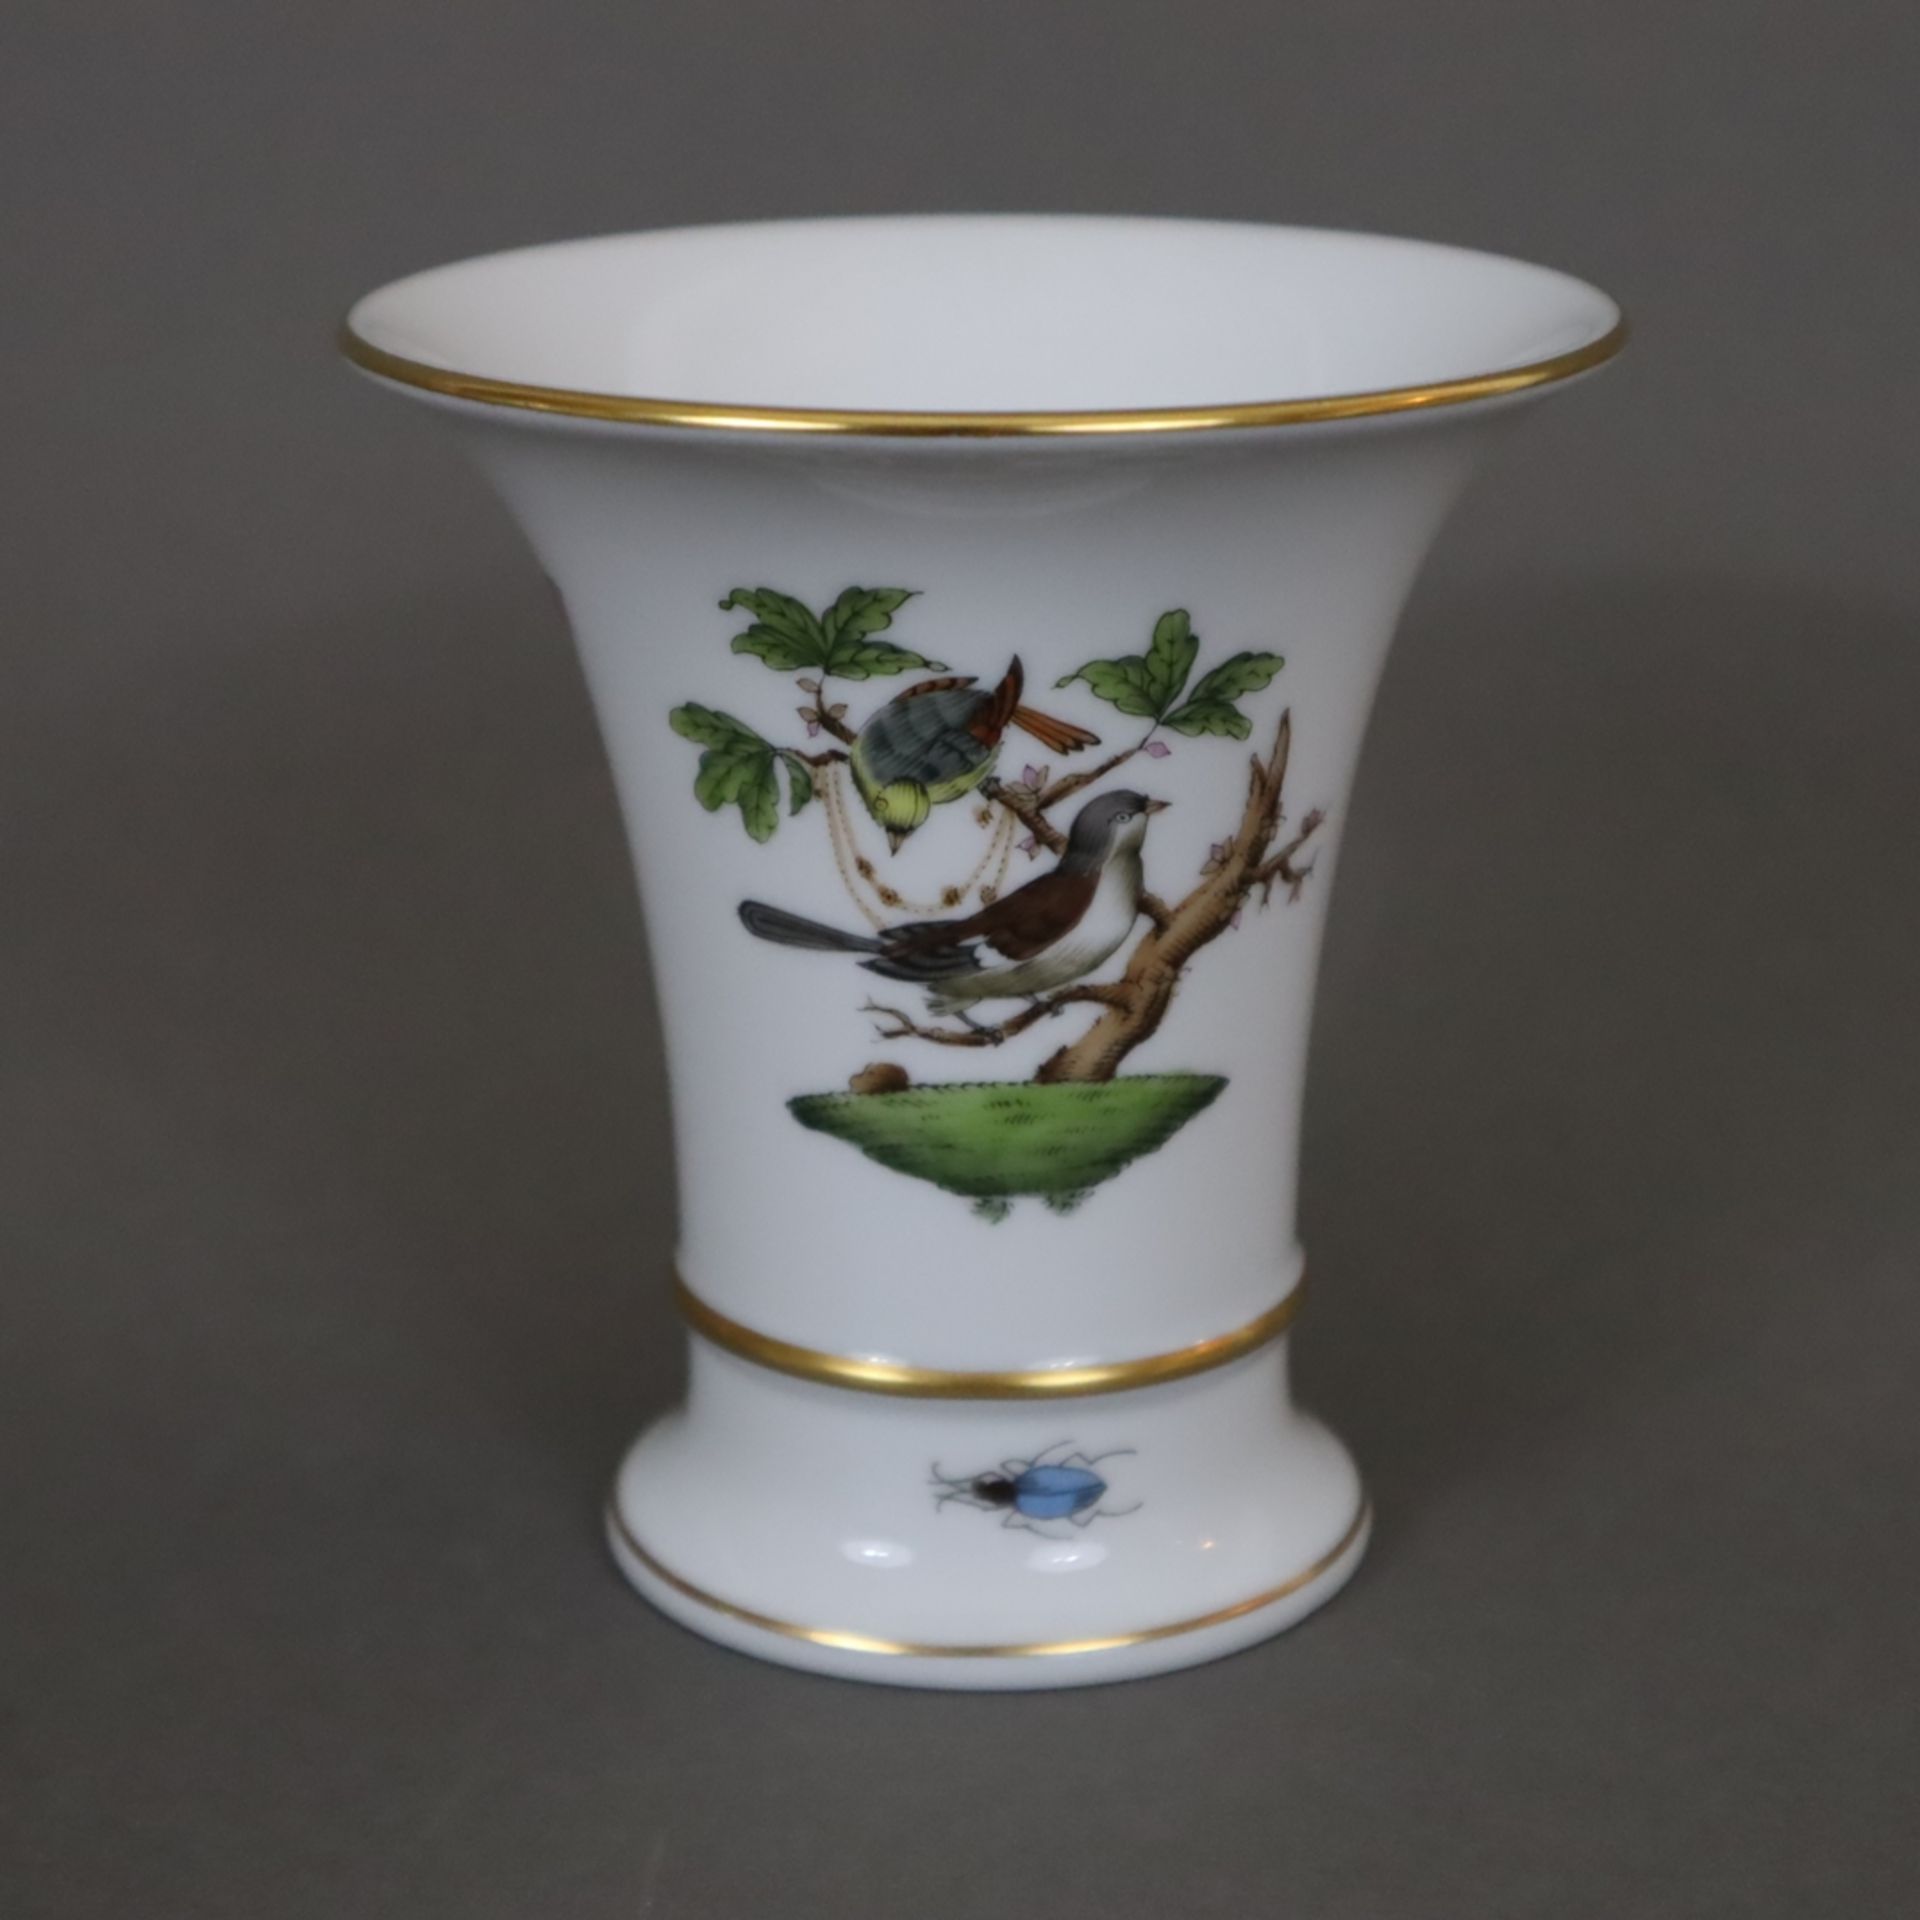 Drei kleine Vasen - Herend, Ungarn, Porzellan, Dekor "Rothschild", polychrome Malerei mit Vogel-und - Bild 3 aus 7